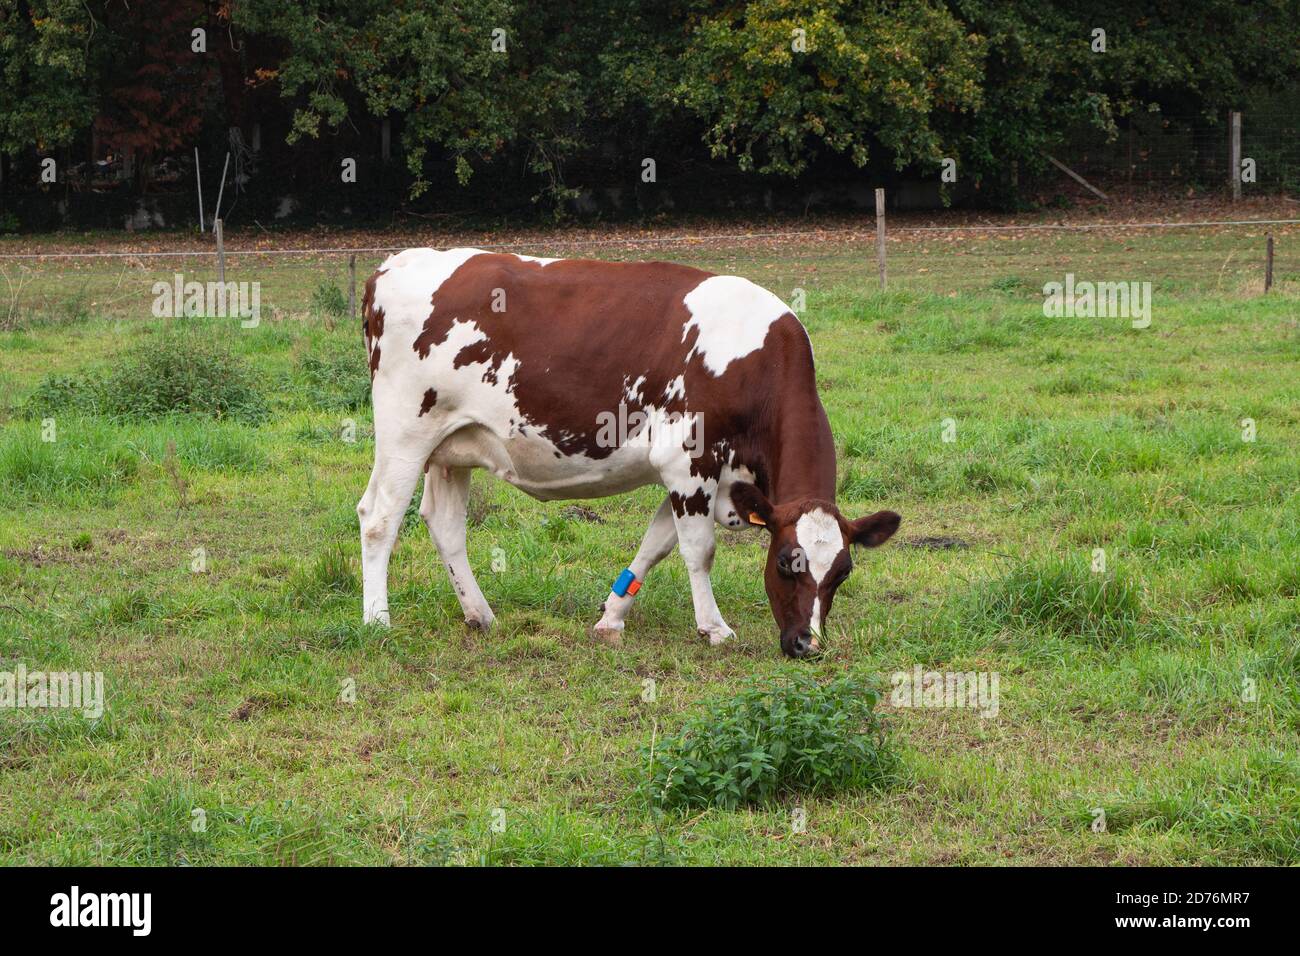 Braun-weiße Kuh mit GPS-Tracker auf ihr Bein Stockfoto